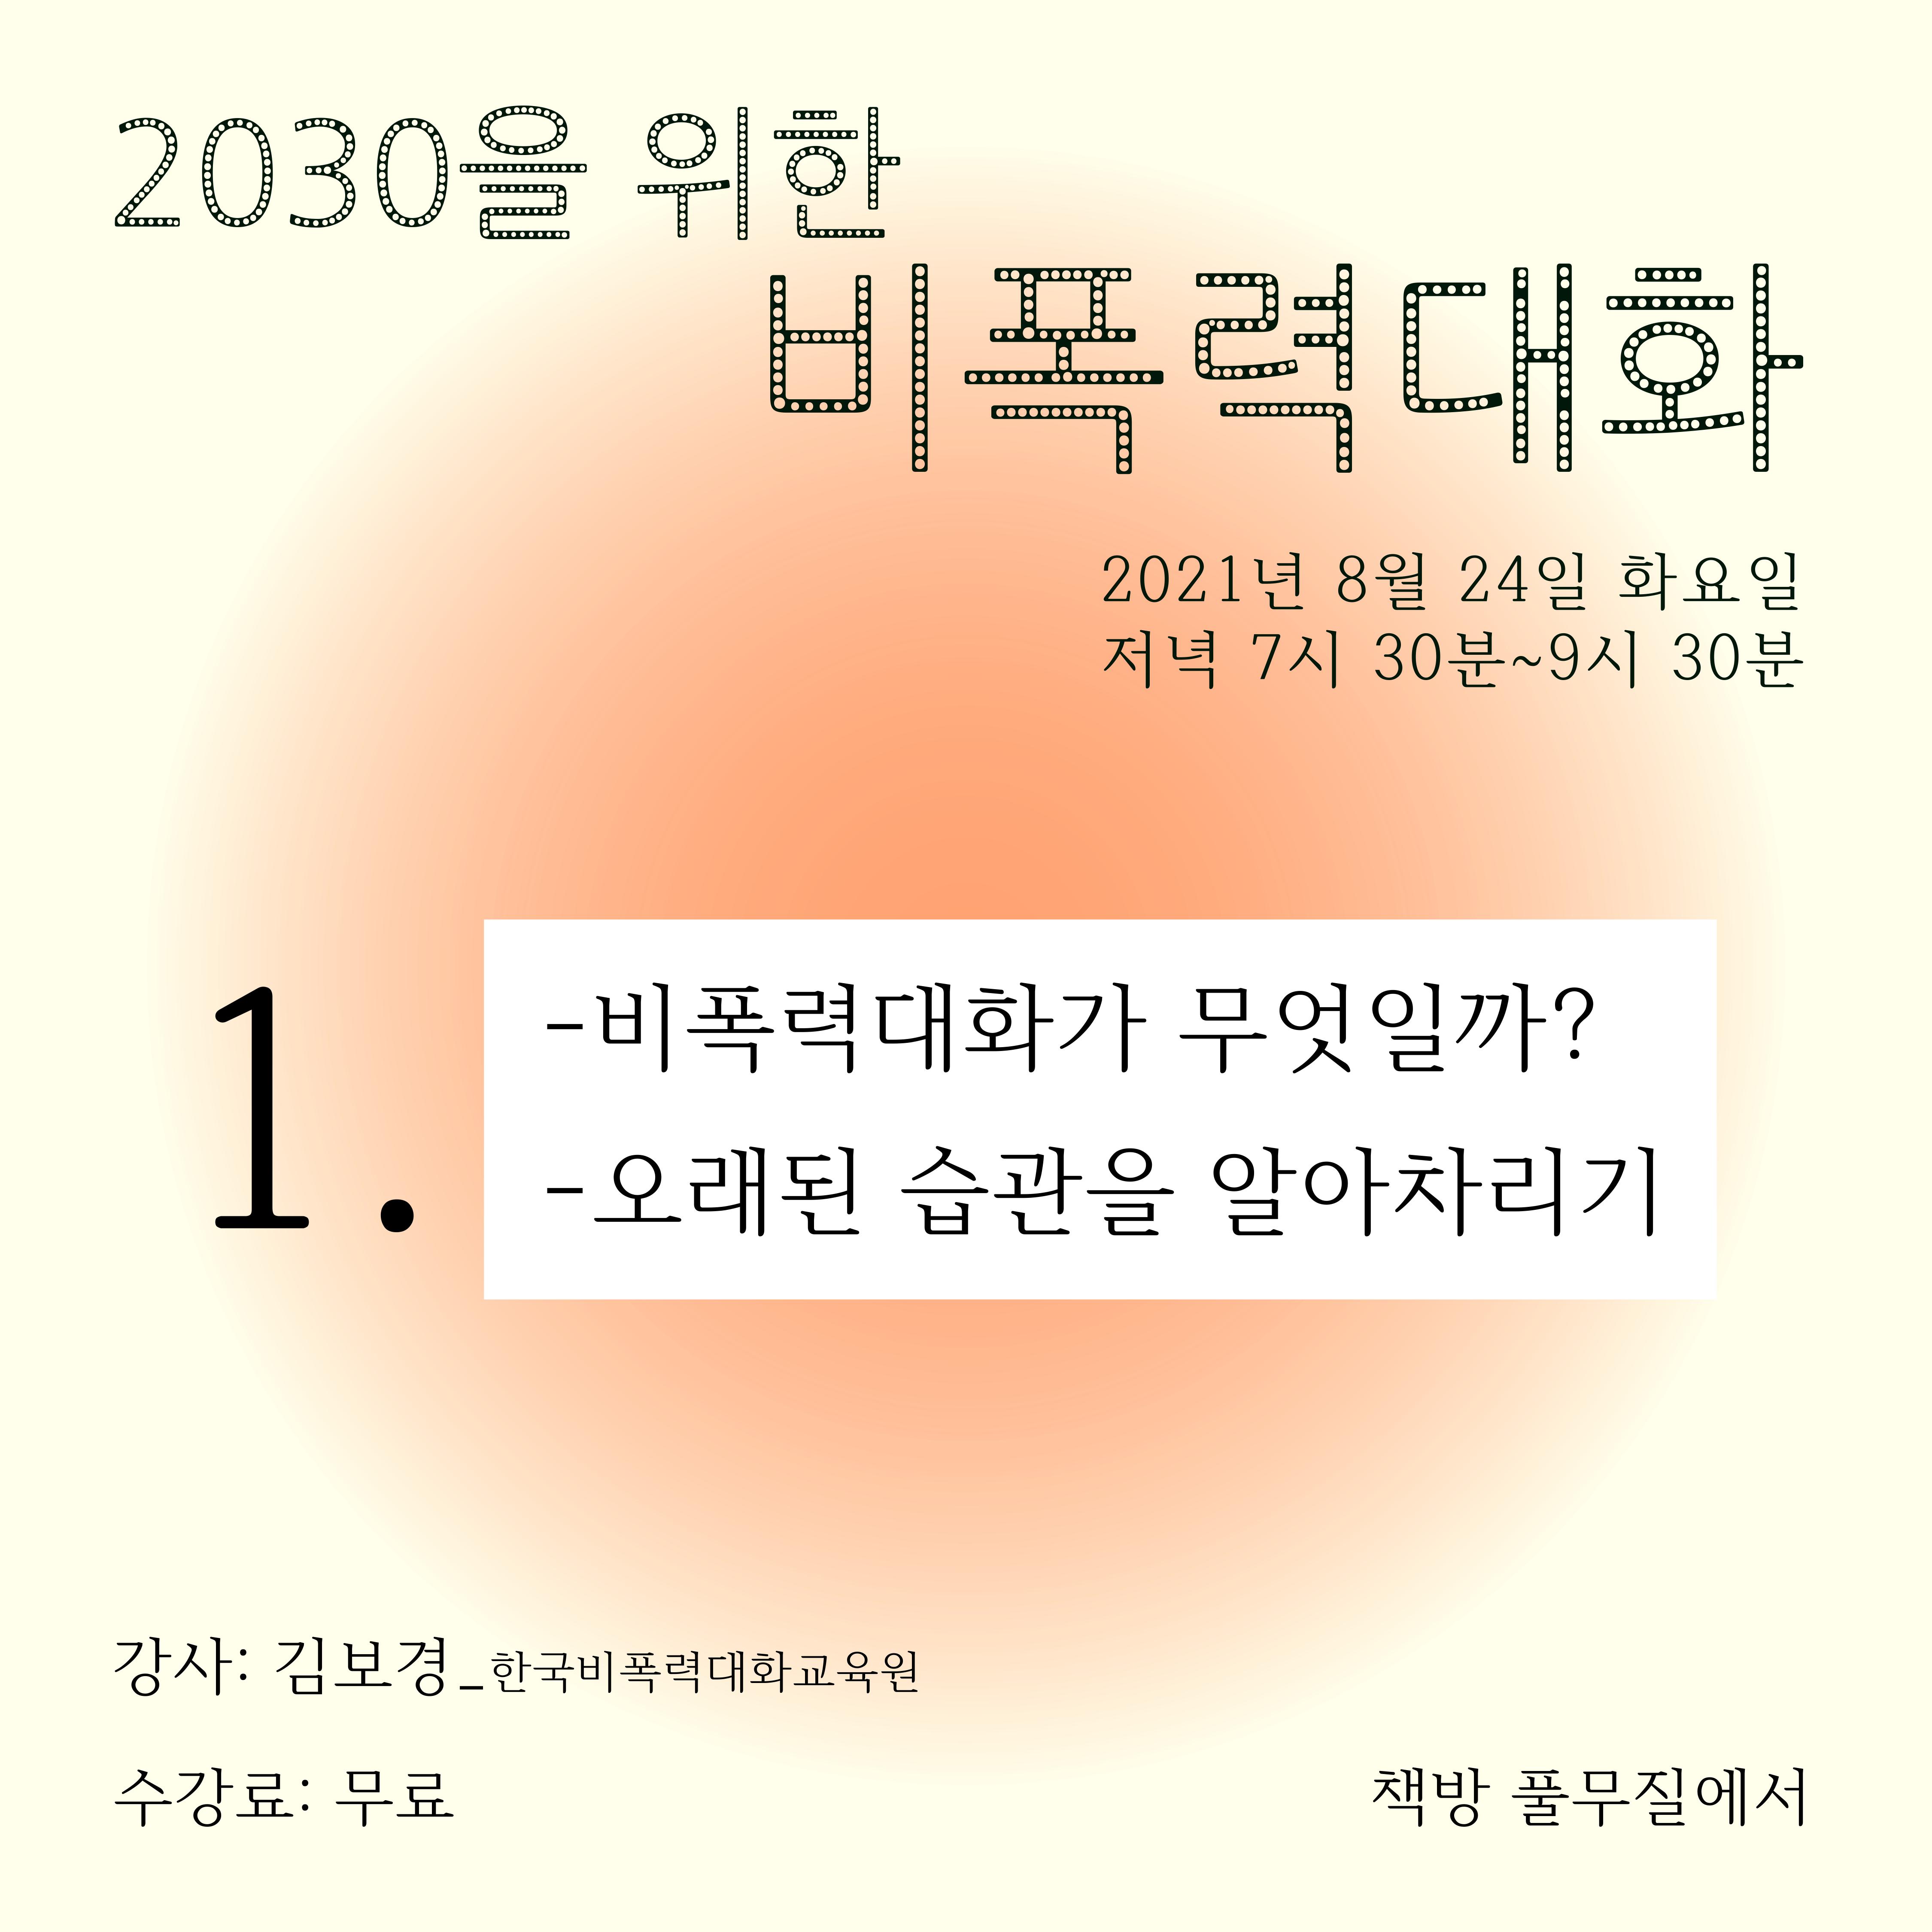 [김보경] 2030을 위한 비폭력대화_1부